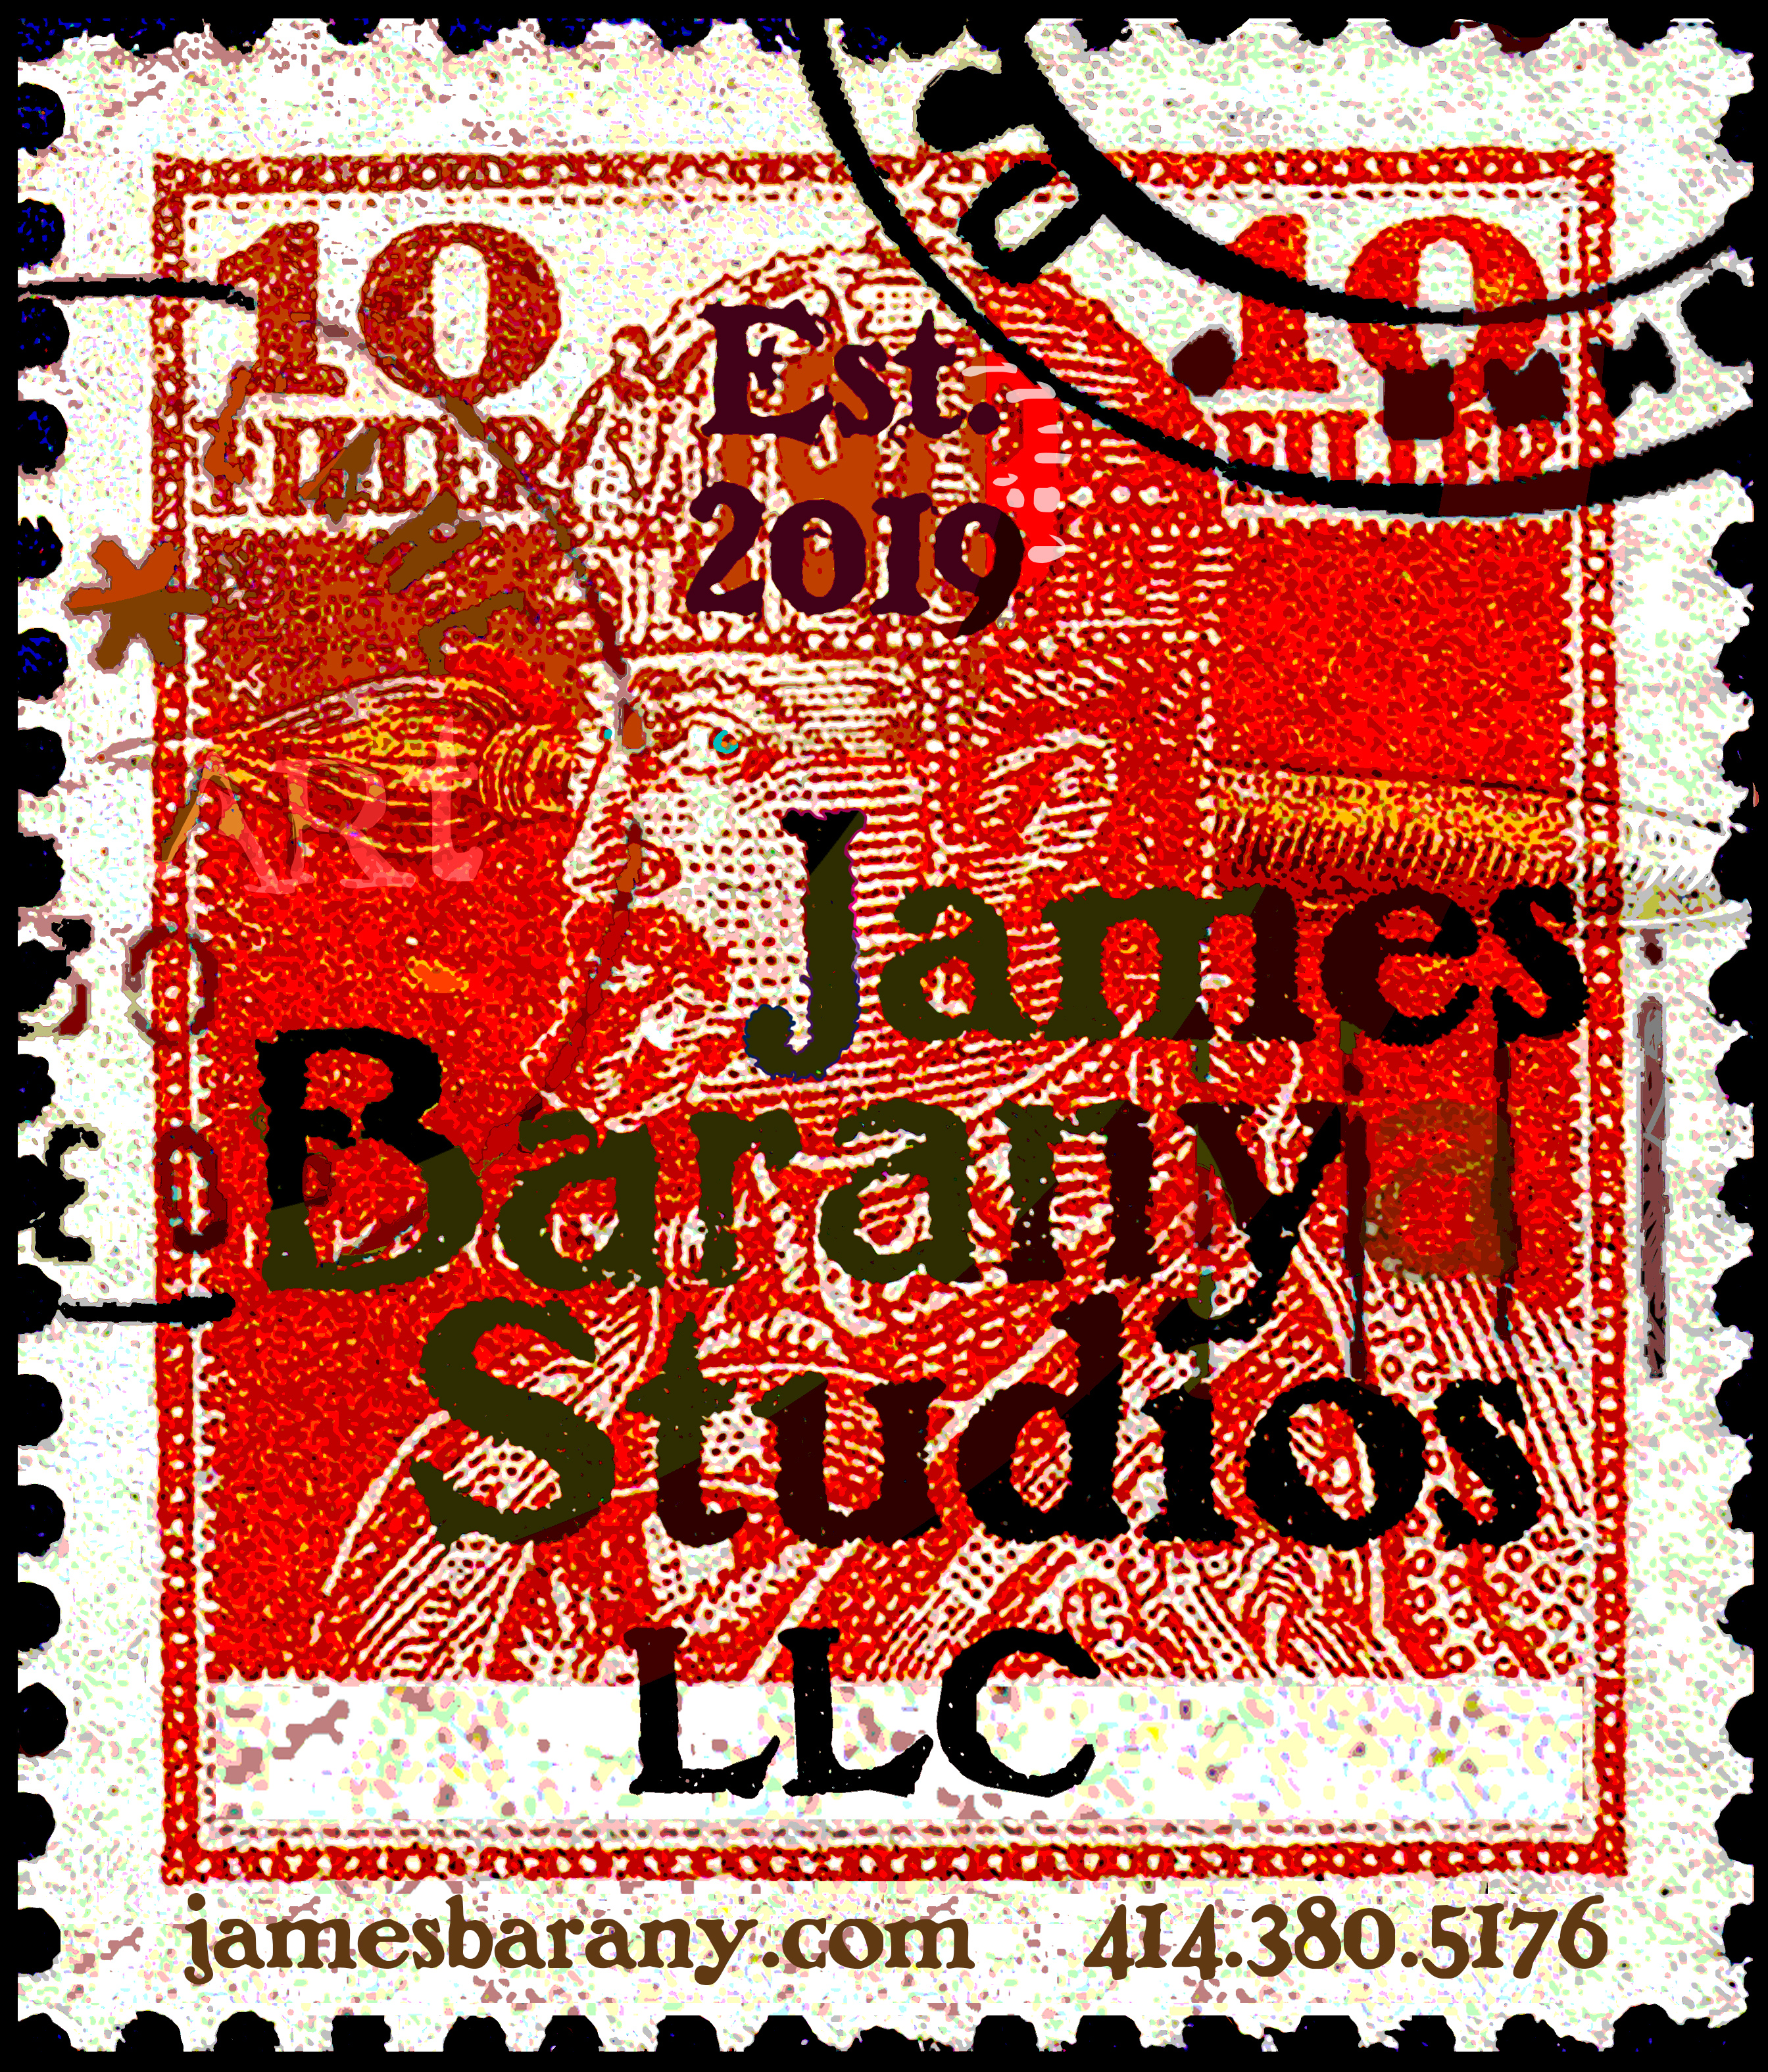 James Barany Studios LLC